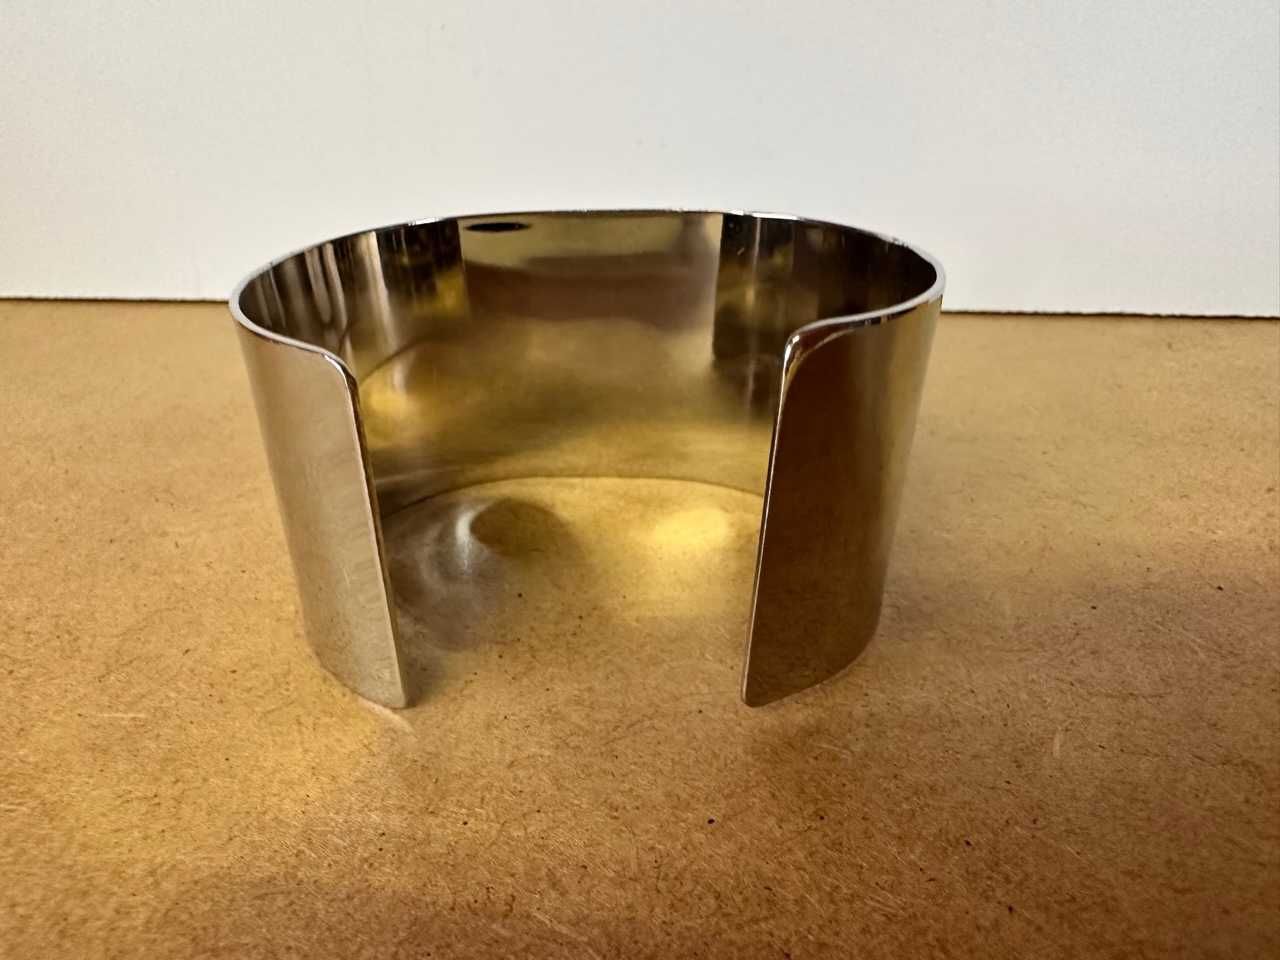 Szeroka bransoletka z metalu z metalowymi kulkami i perełkami, 6 cm